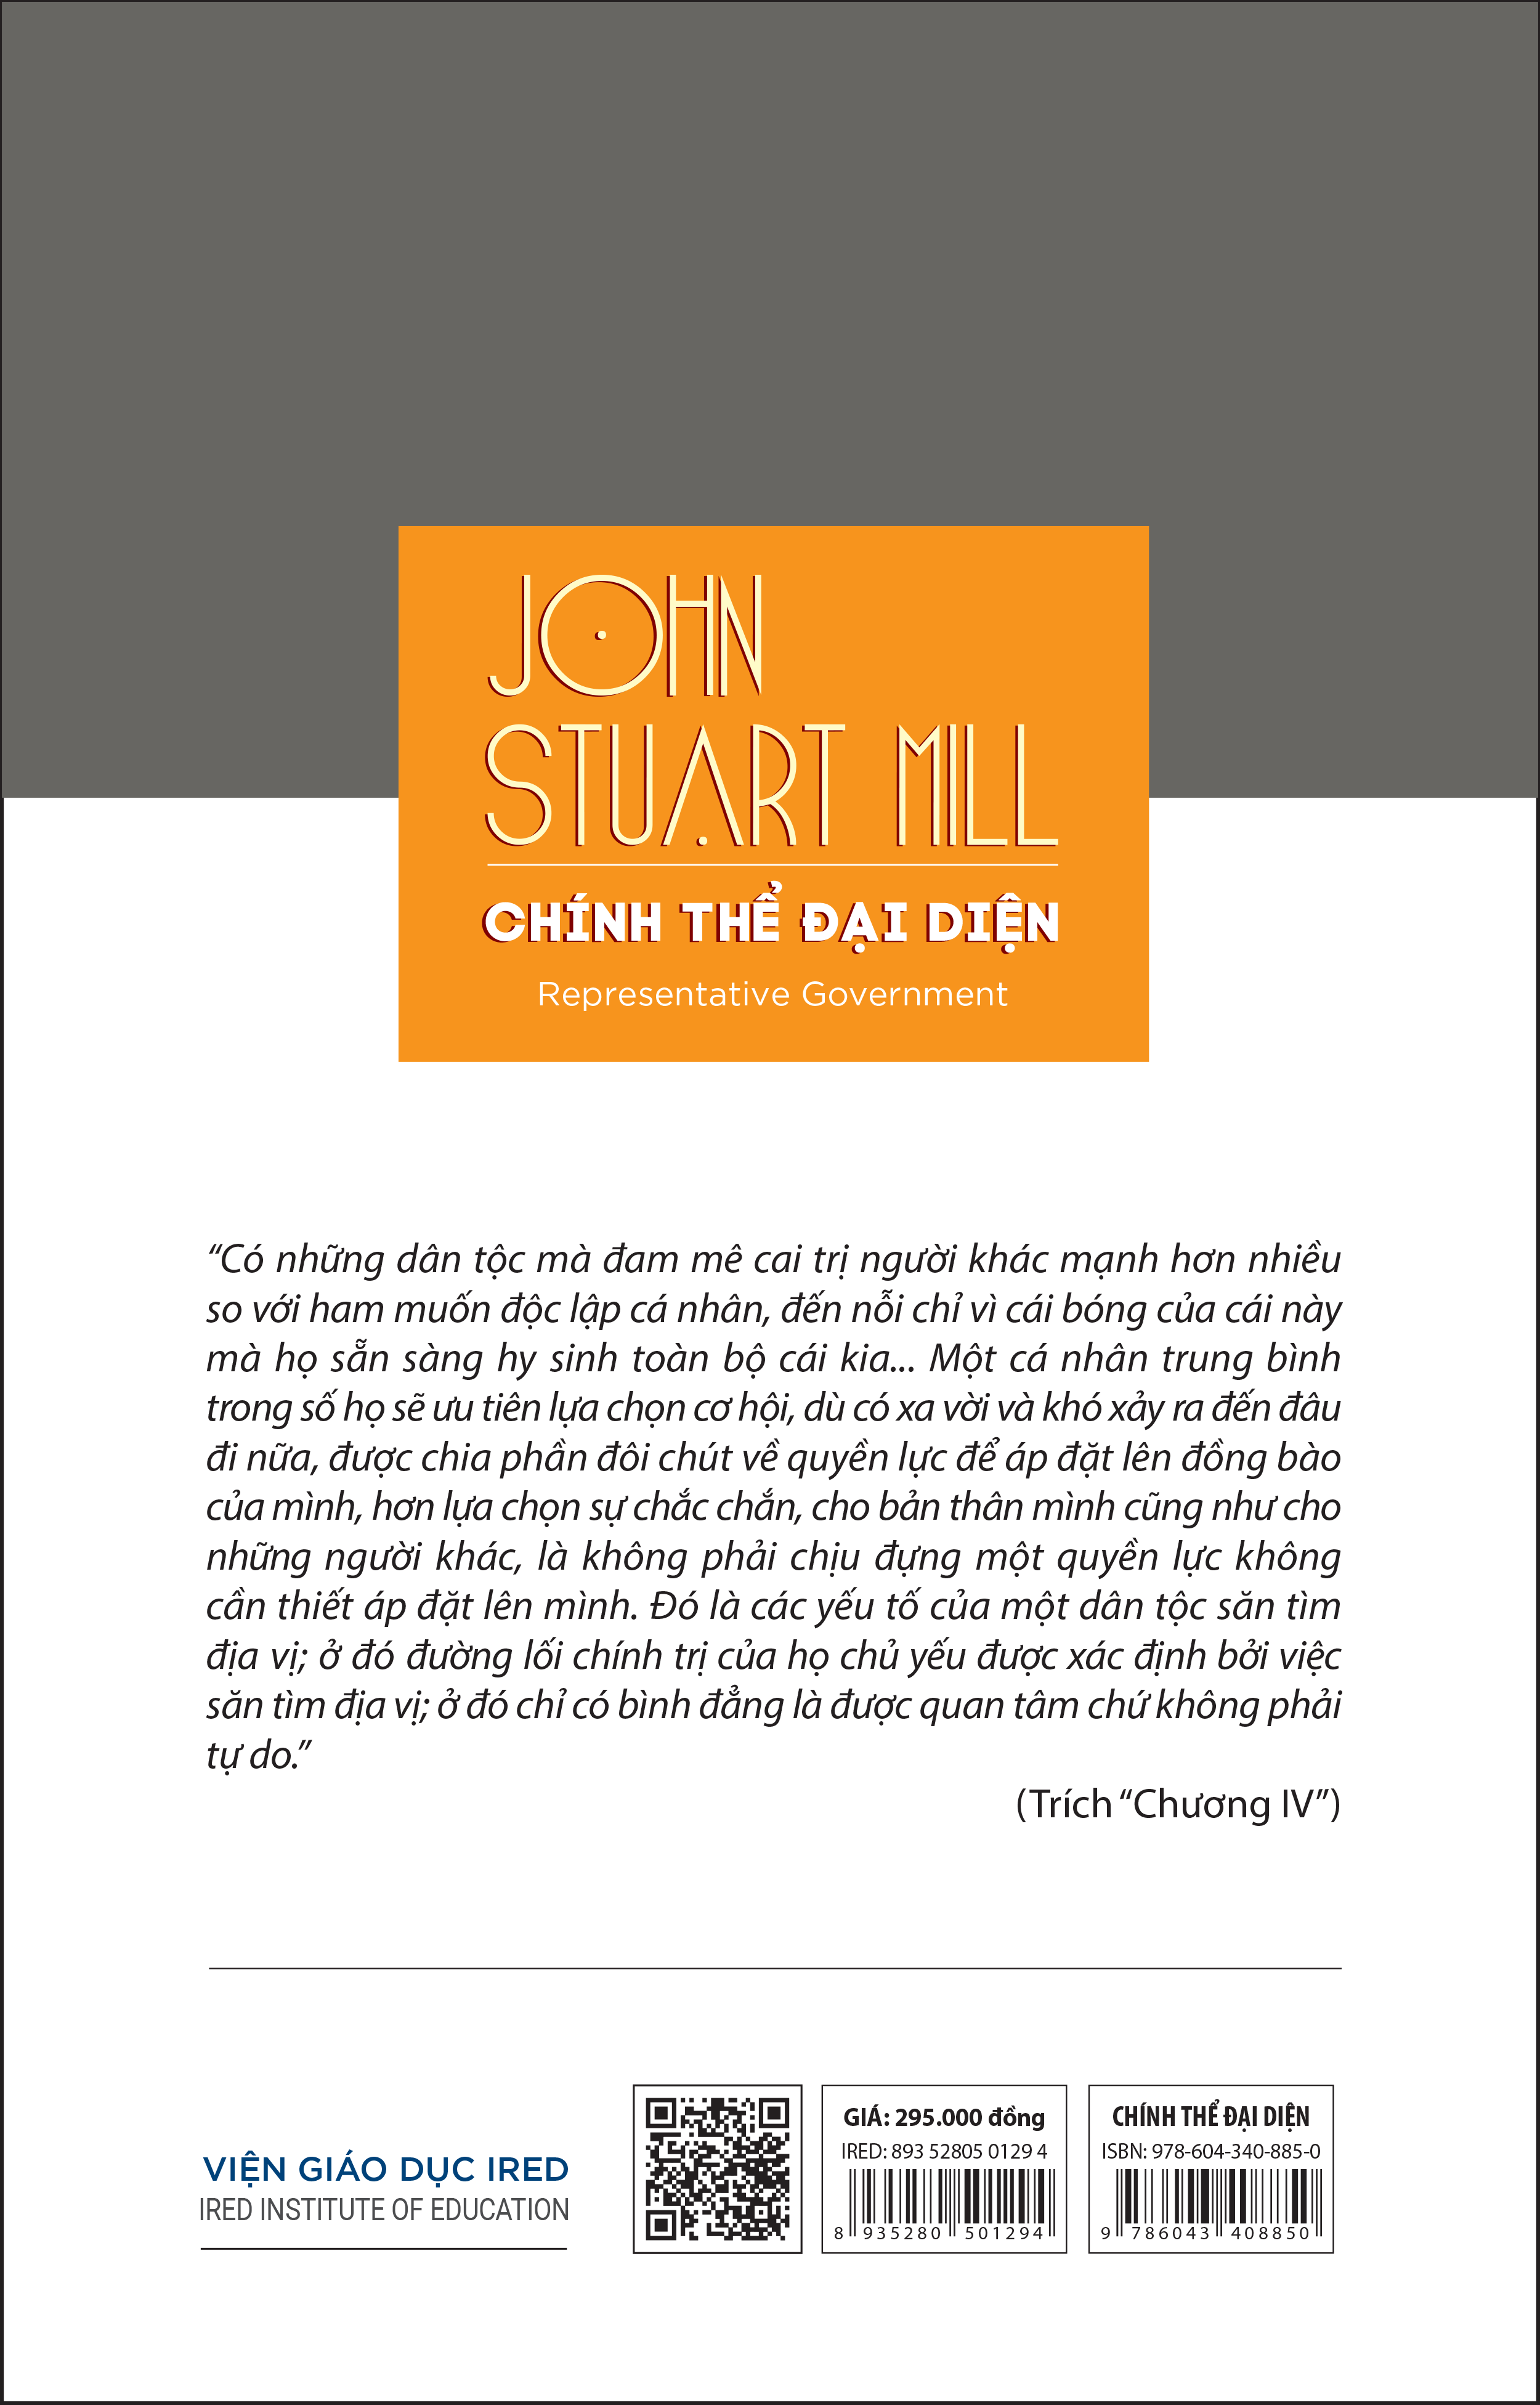 (Bìa cứng) CHÍNH THỂ ĐẠI DIỆN (Representative Government) - John Stuart Mill - Nguyễn Văn Trọng và Bùi Văn Nam Sơn (dịch, chú thích và giới thiệu)